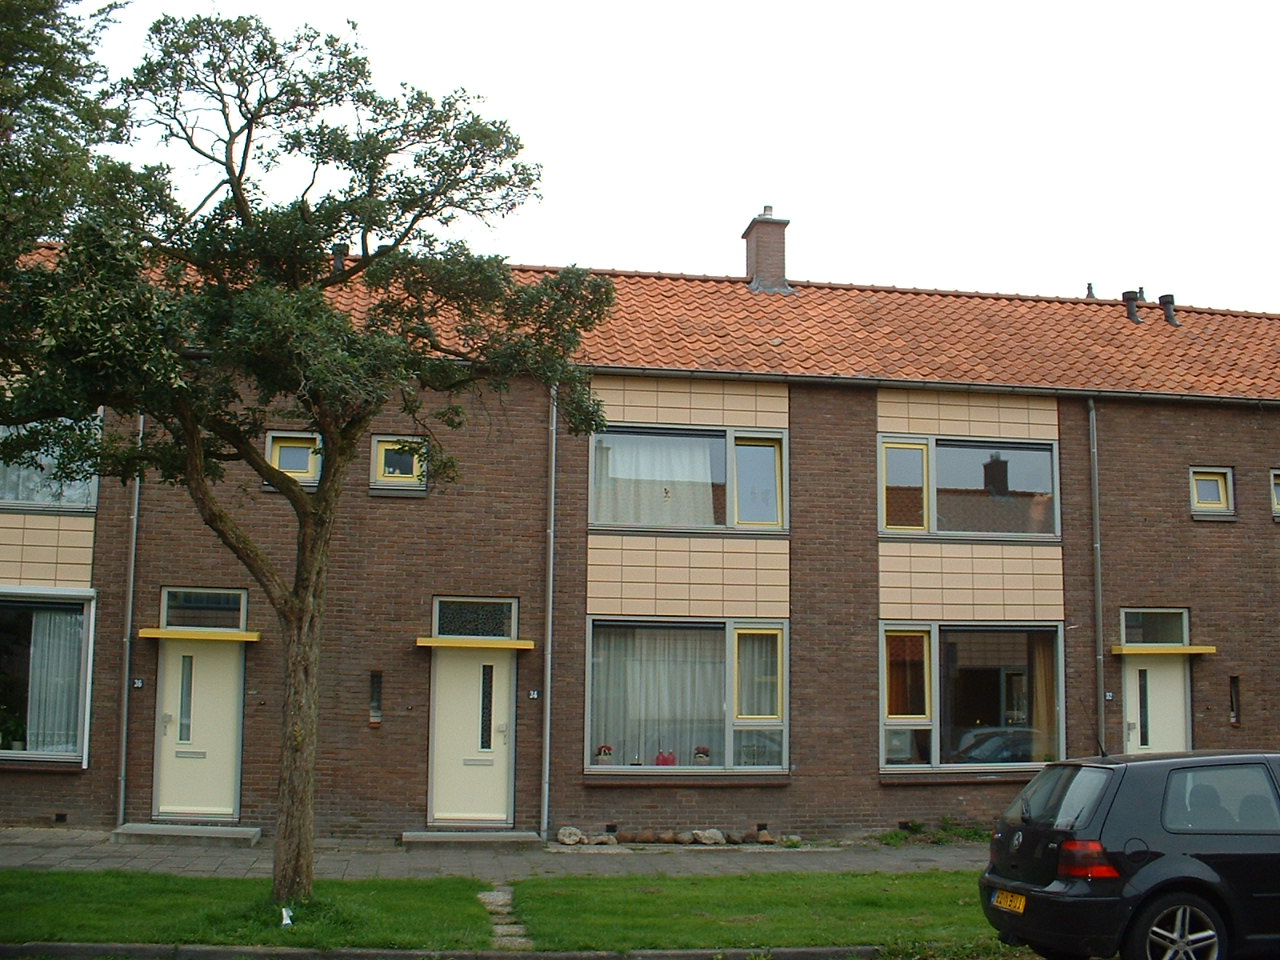 Tandarts Schipperstraat 34, 7902 HT Hoogeveen, Nederland